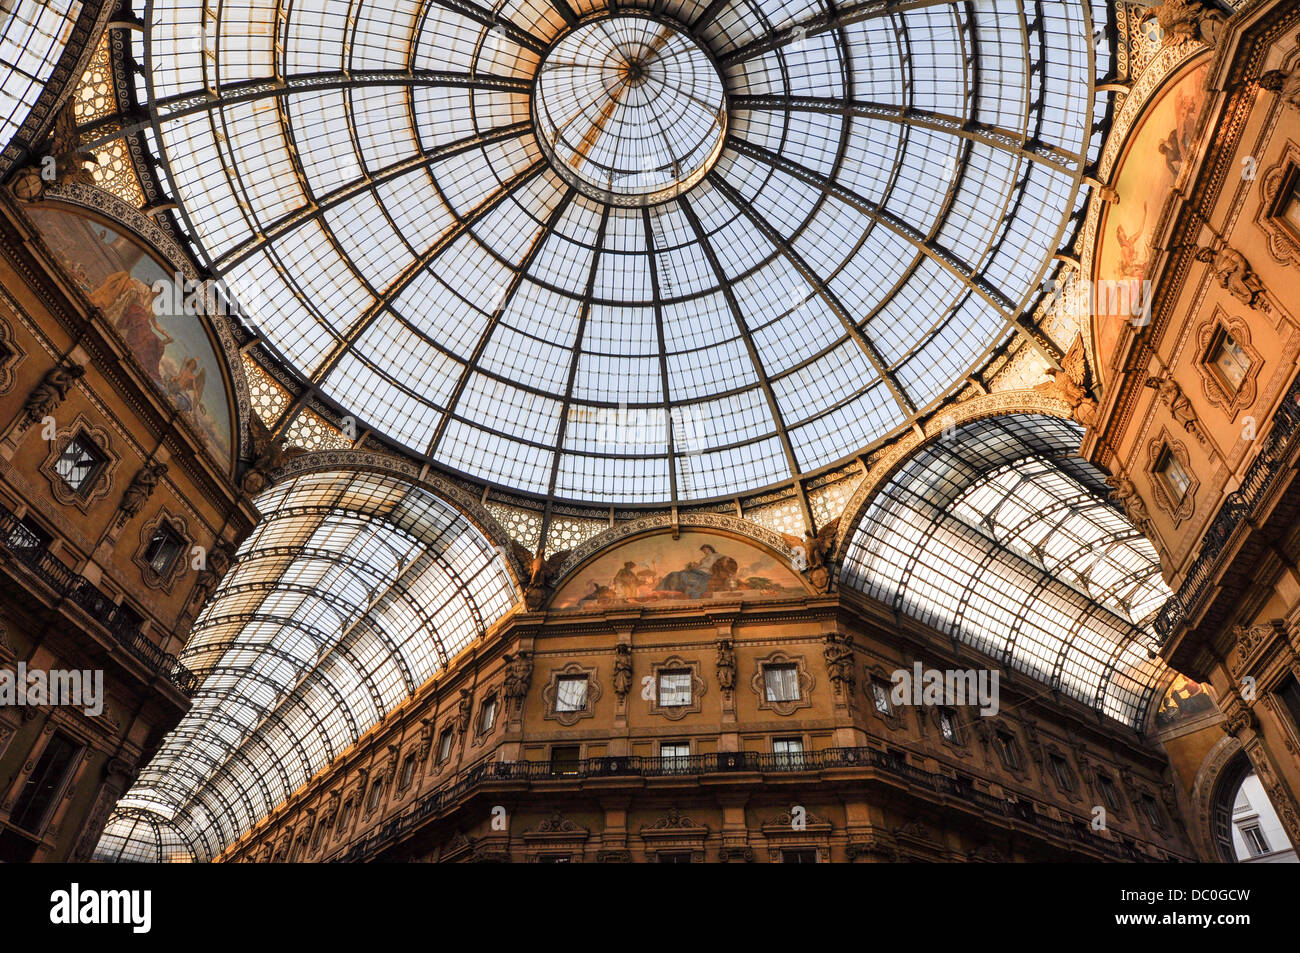 Centre commercial de la Galleria Vittorio Emanuele II à Milan en Italie. Presque toutes les grandes marques sont répertoriées ici. Banque D'Images